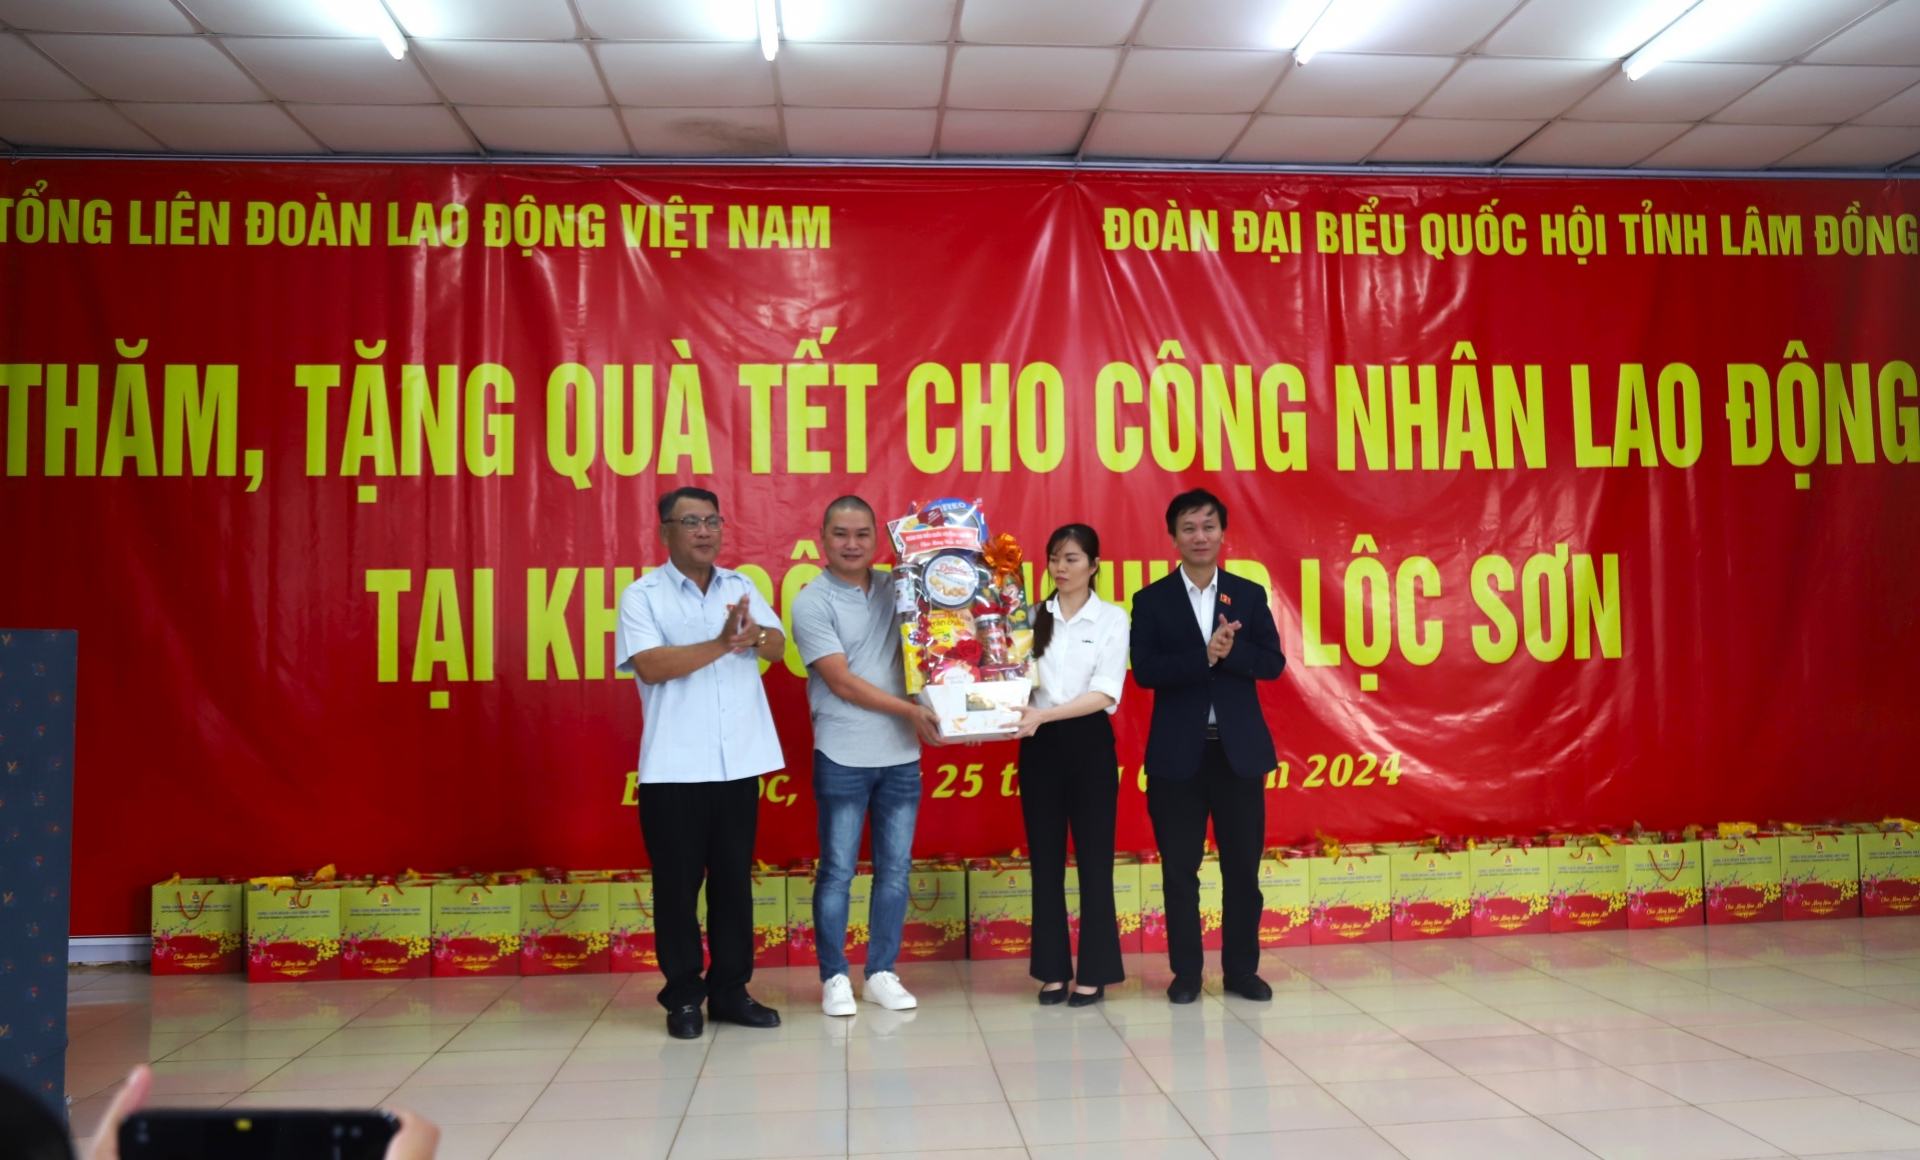 Đồng chí Lâm Văn Đoan – Phó Chủ nhiệm Ủy ban Xã hội của Quốc hội  và đồng chí Nguyễn Tạo - Phó Trưởng Đoàn đại biểu Quốc hội tỉnh Lâm Đồng trao tặng quà Tết cho Công ty Merkava